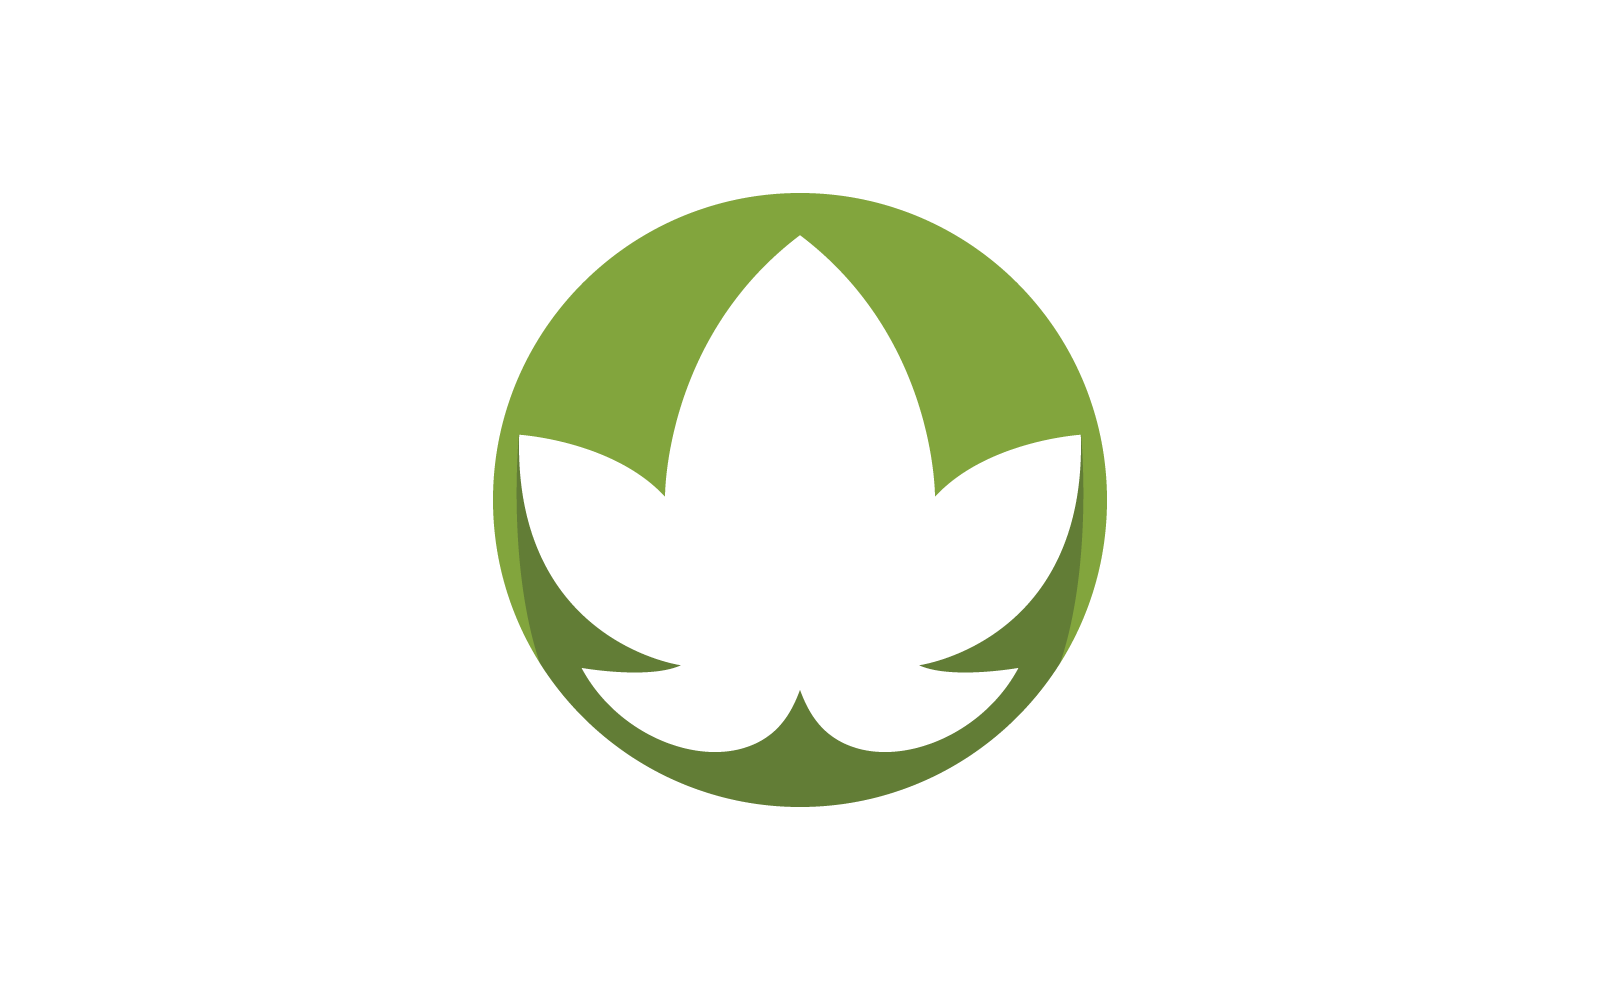 Monstera leaf logo vector flat design